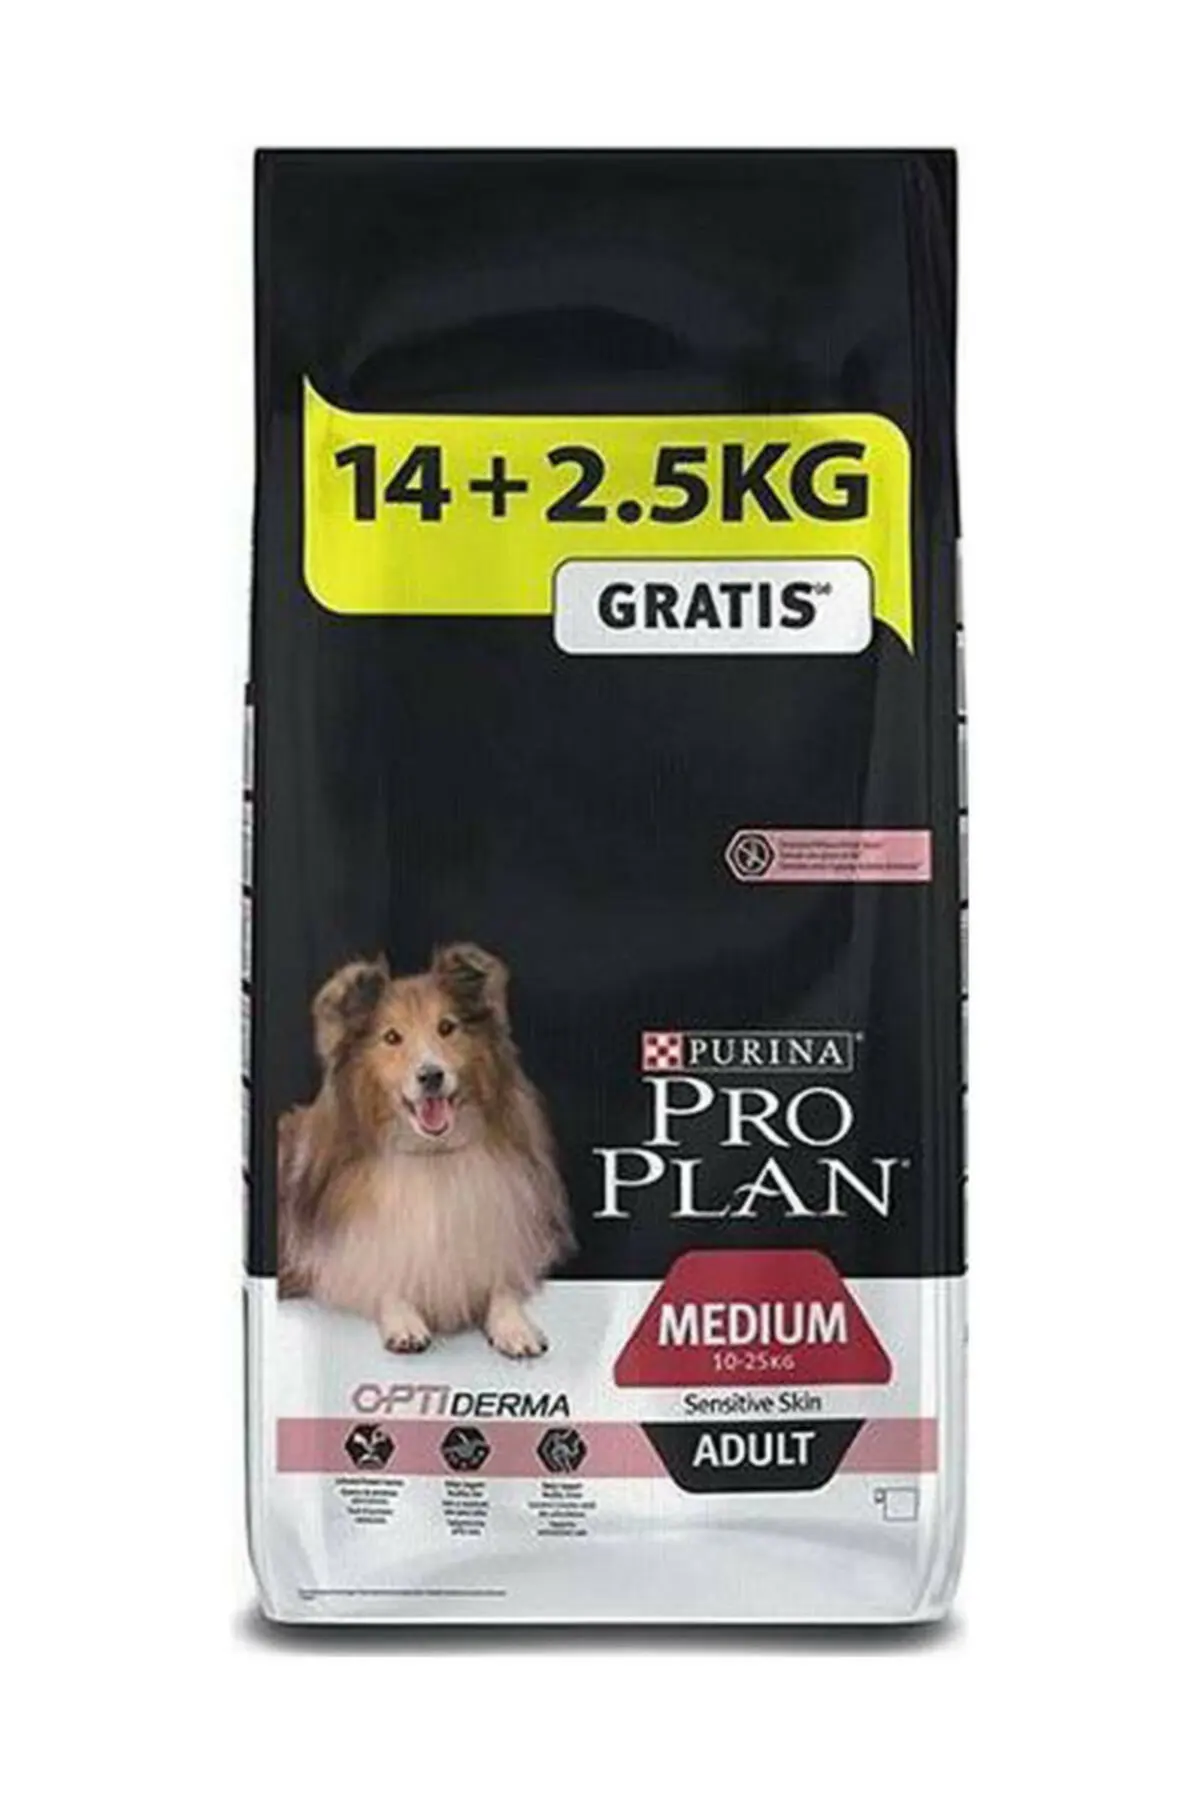 New Somonlu Precision Adult Dry Dog Food 14 + 2,5Kg MERO GLOBAL Turkey Fast Shipping